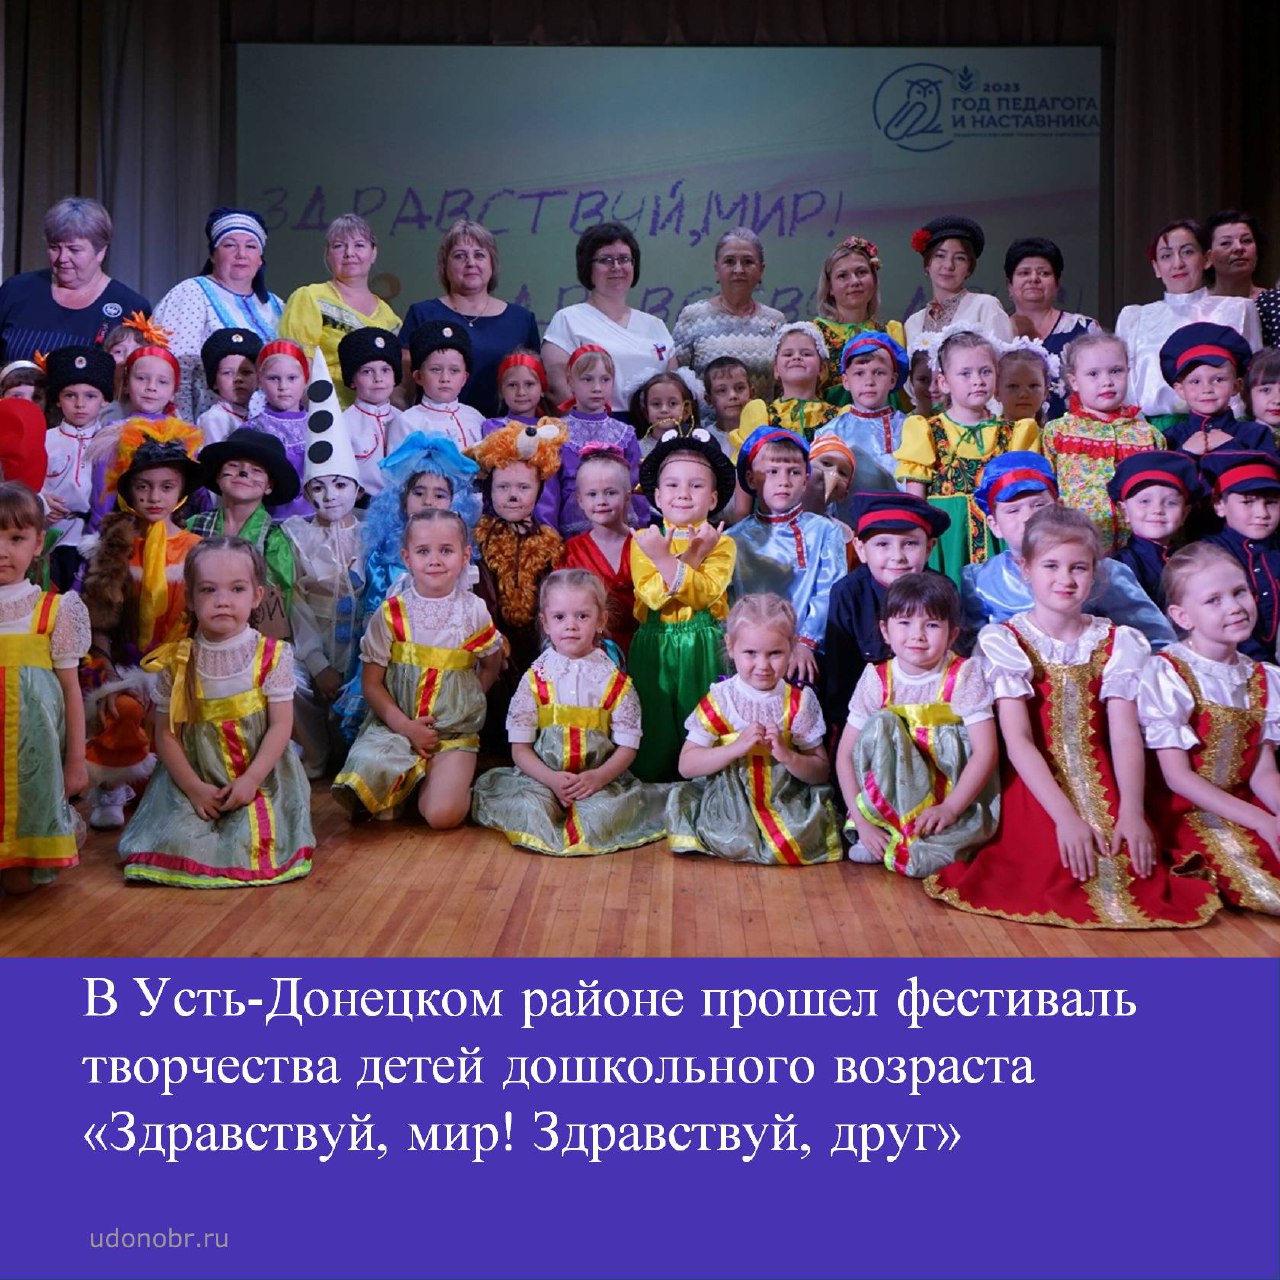 В Усть-Донецком районе прошел фестиваль творчества детей дошкольного возраста «Здравствуй, мир! Здравствуй, друг»